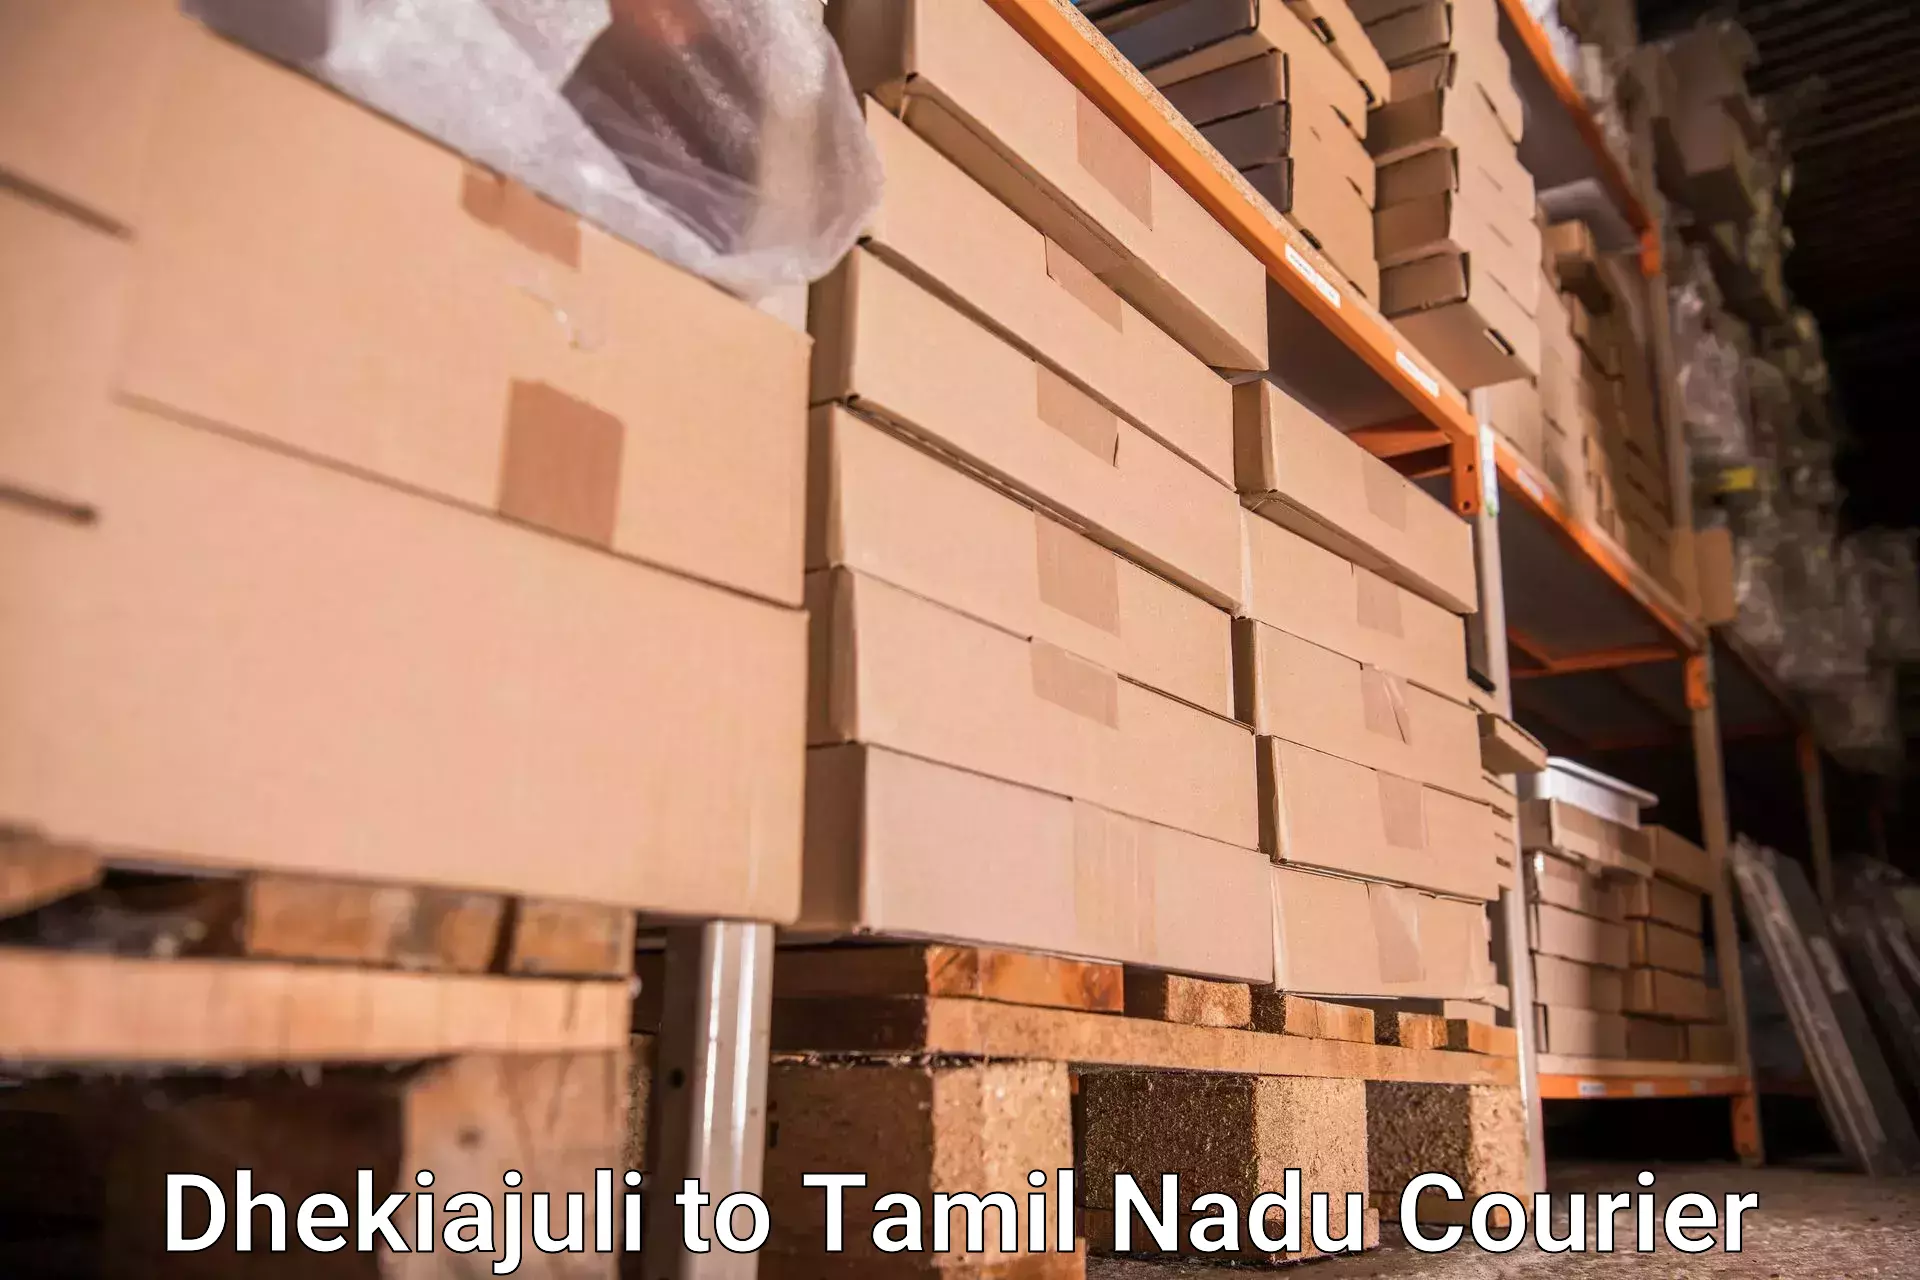 Baggage shipping experience Dhekiajuli to Tiruturaipundi